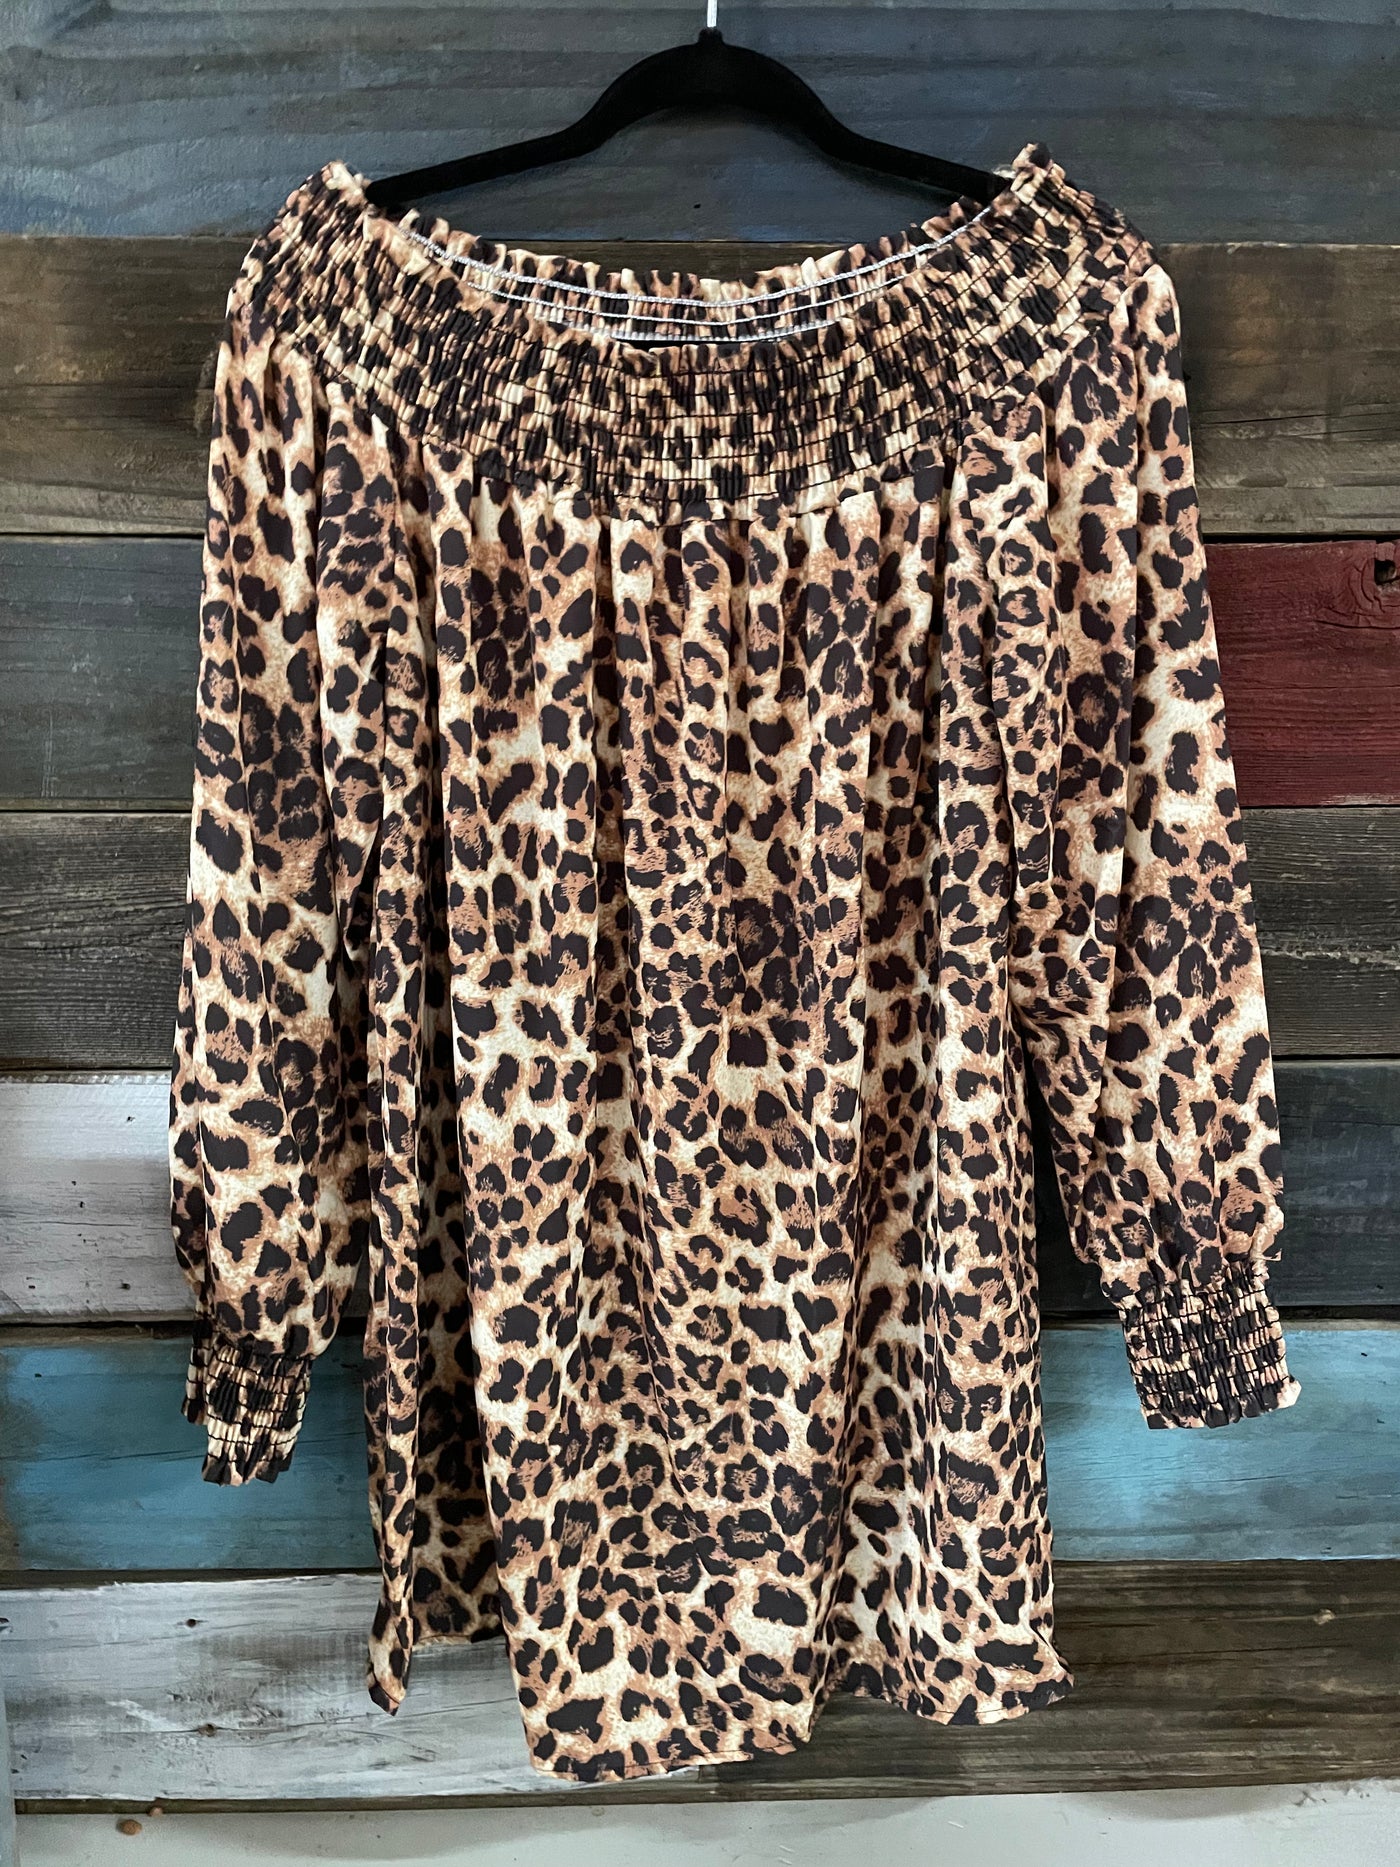 Leopard Print blouse